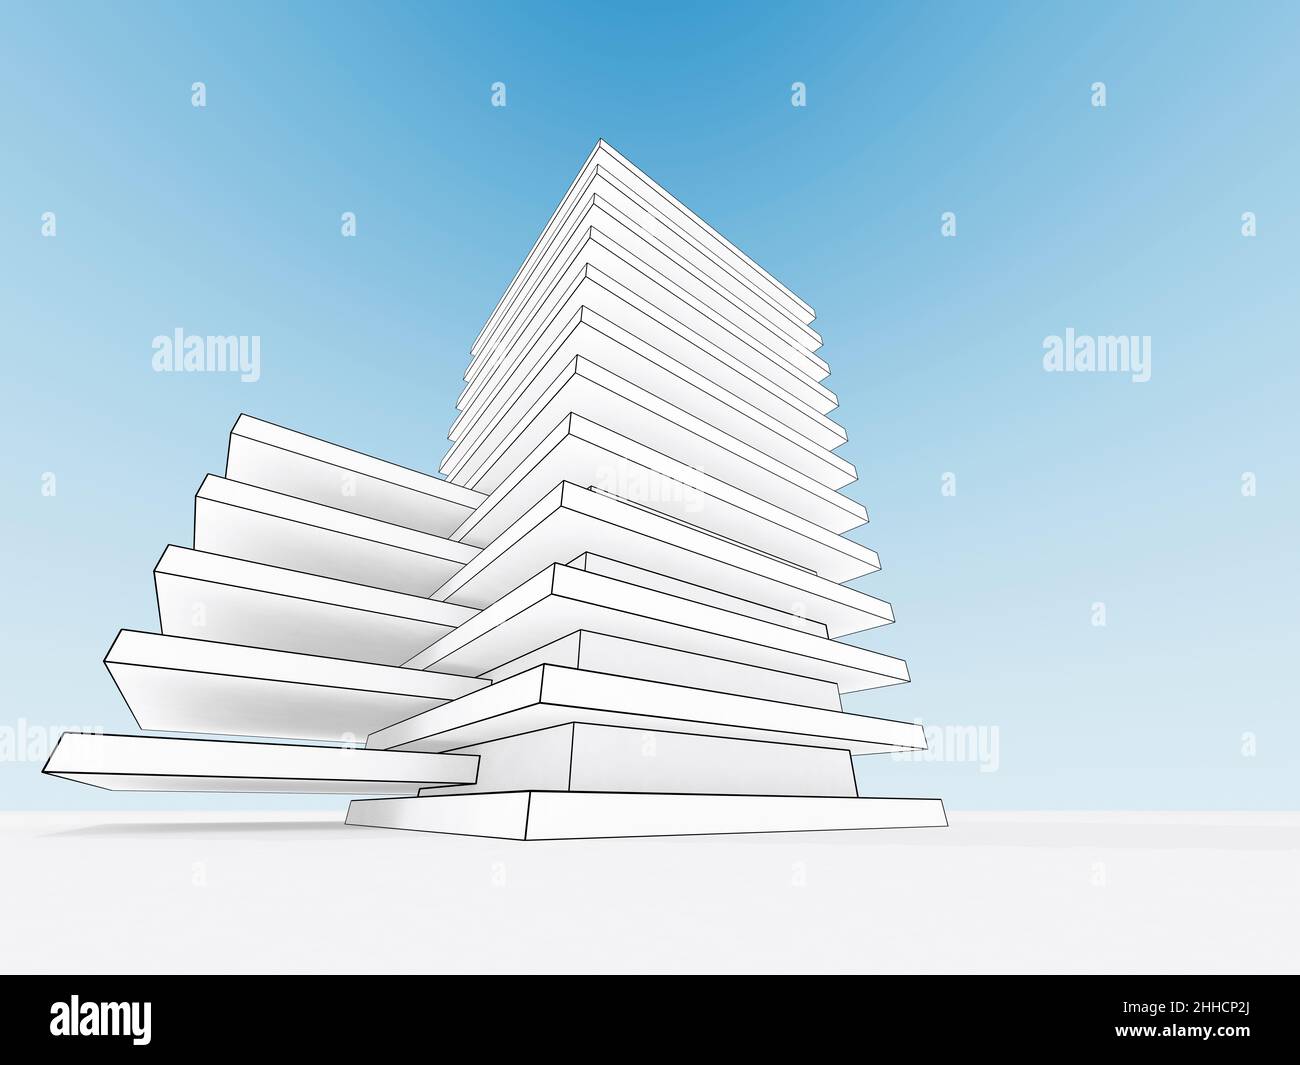 Umriss eines Drahtrahmens eines modernen weißen Gebäudes unter klarem blauen Himmel, 3D Rendering Illustration Stockfoto